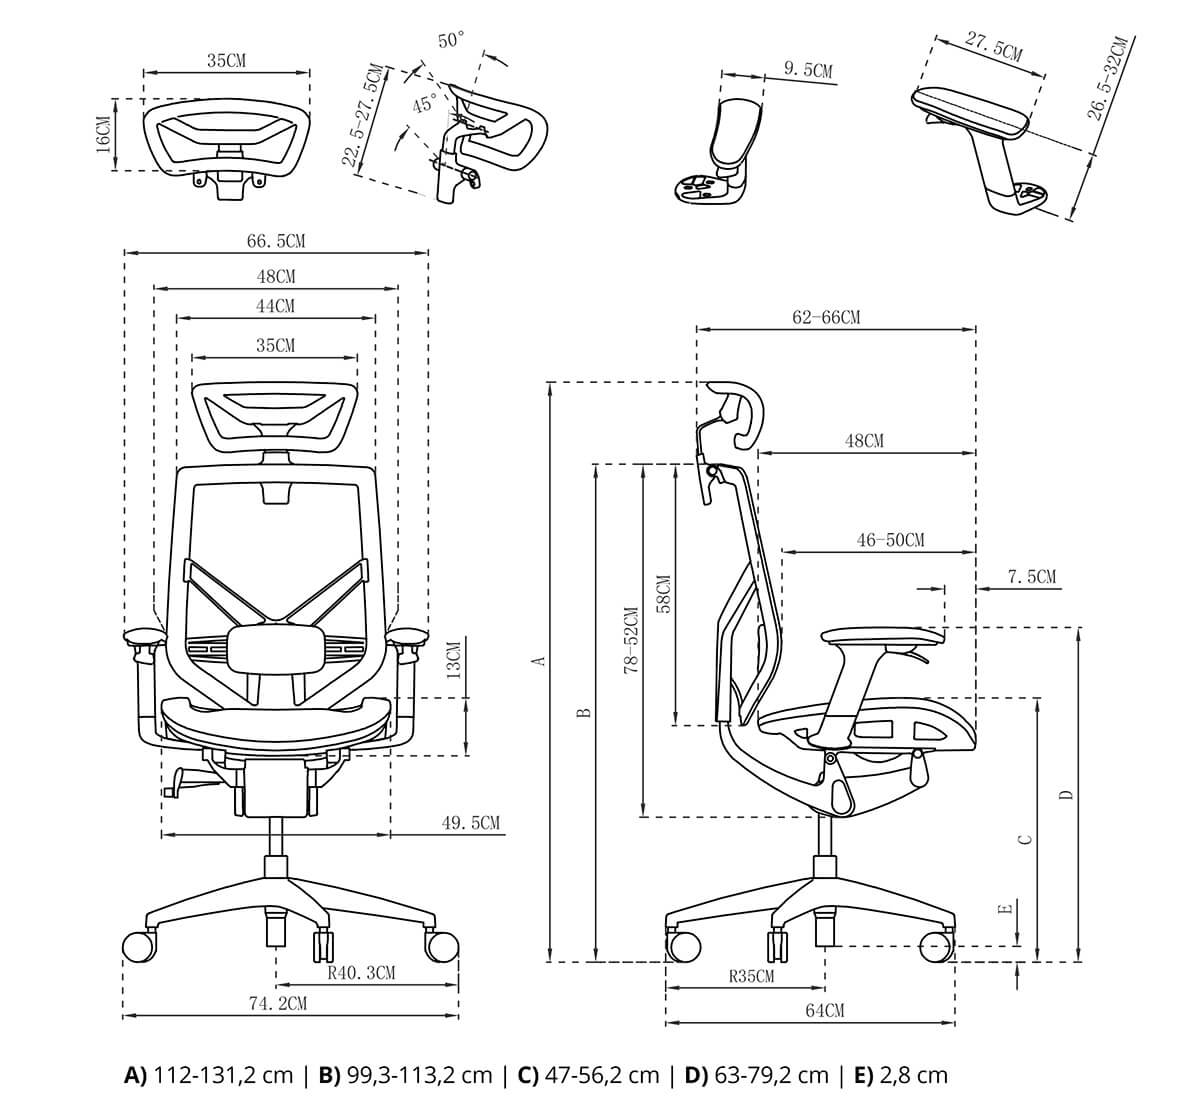 wymiary fotela rysunek techniczny spacetronik ergoline